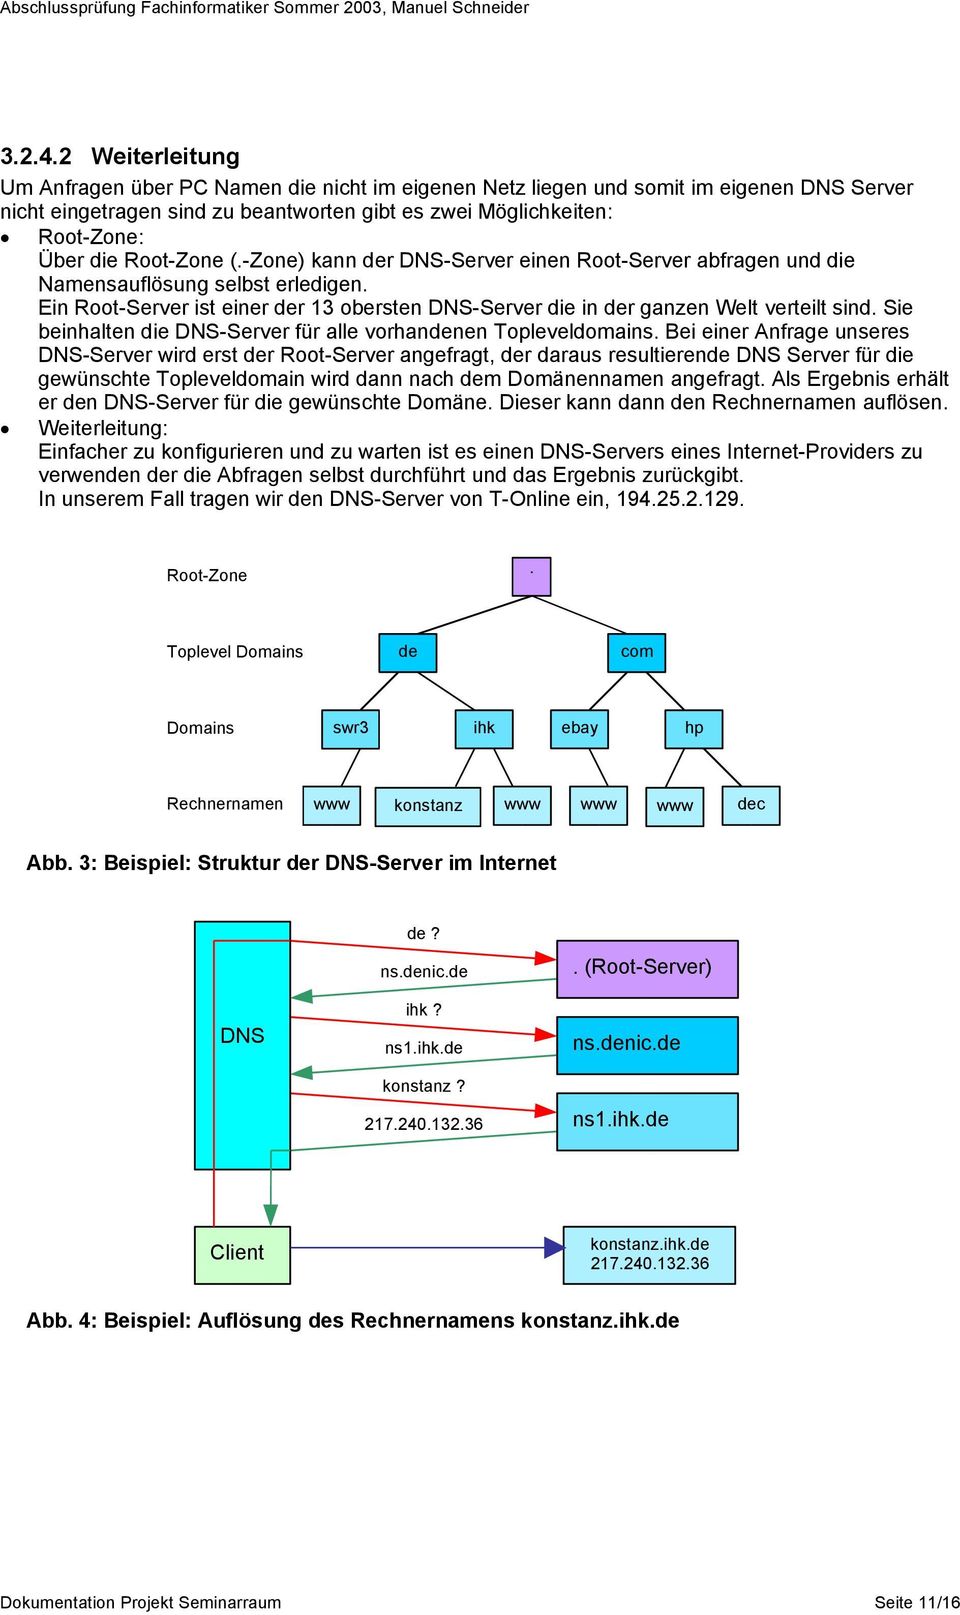 Root-Zone (.-Zone) kann der DNS-Server einen Root-Server abfragen und die Namensauflösung selbst erledigen. Ein Root-Server ist einer der 13 obersten DNS-Server die in der ganzen Welt verteilt sind.